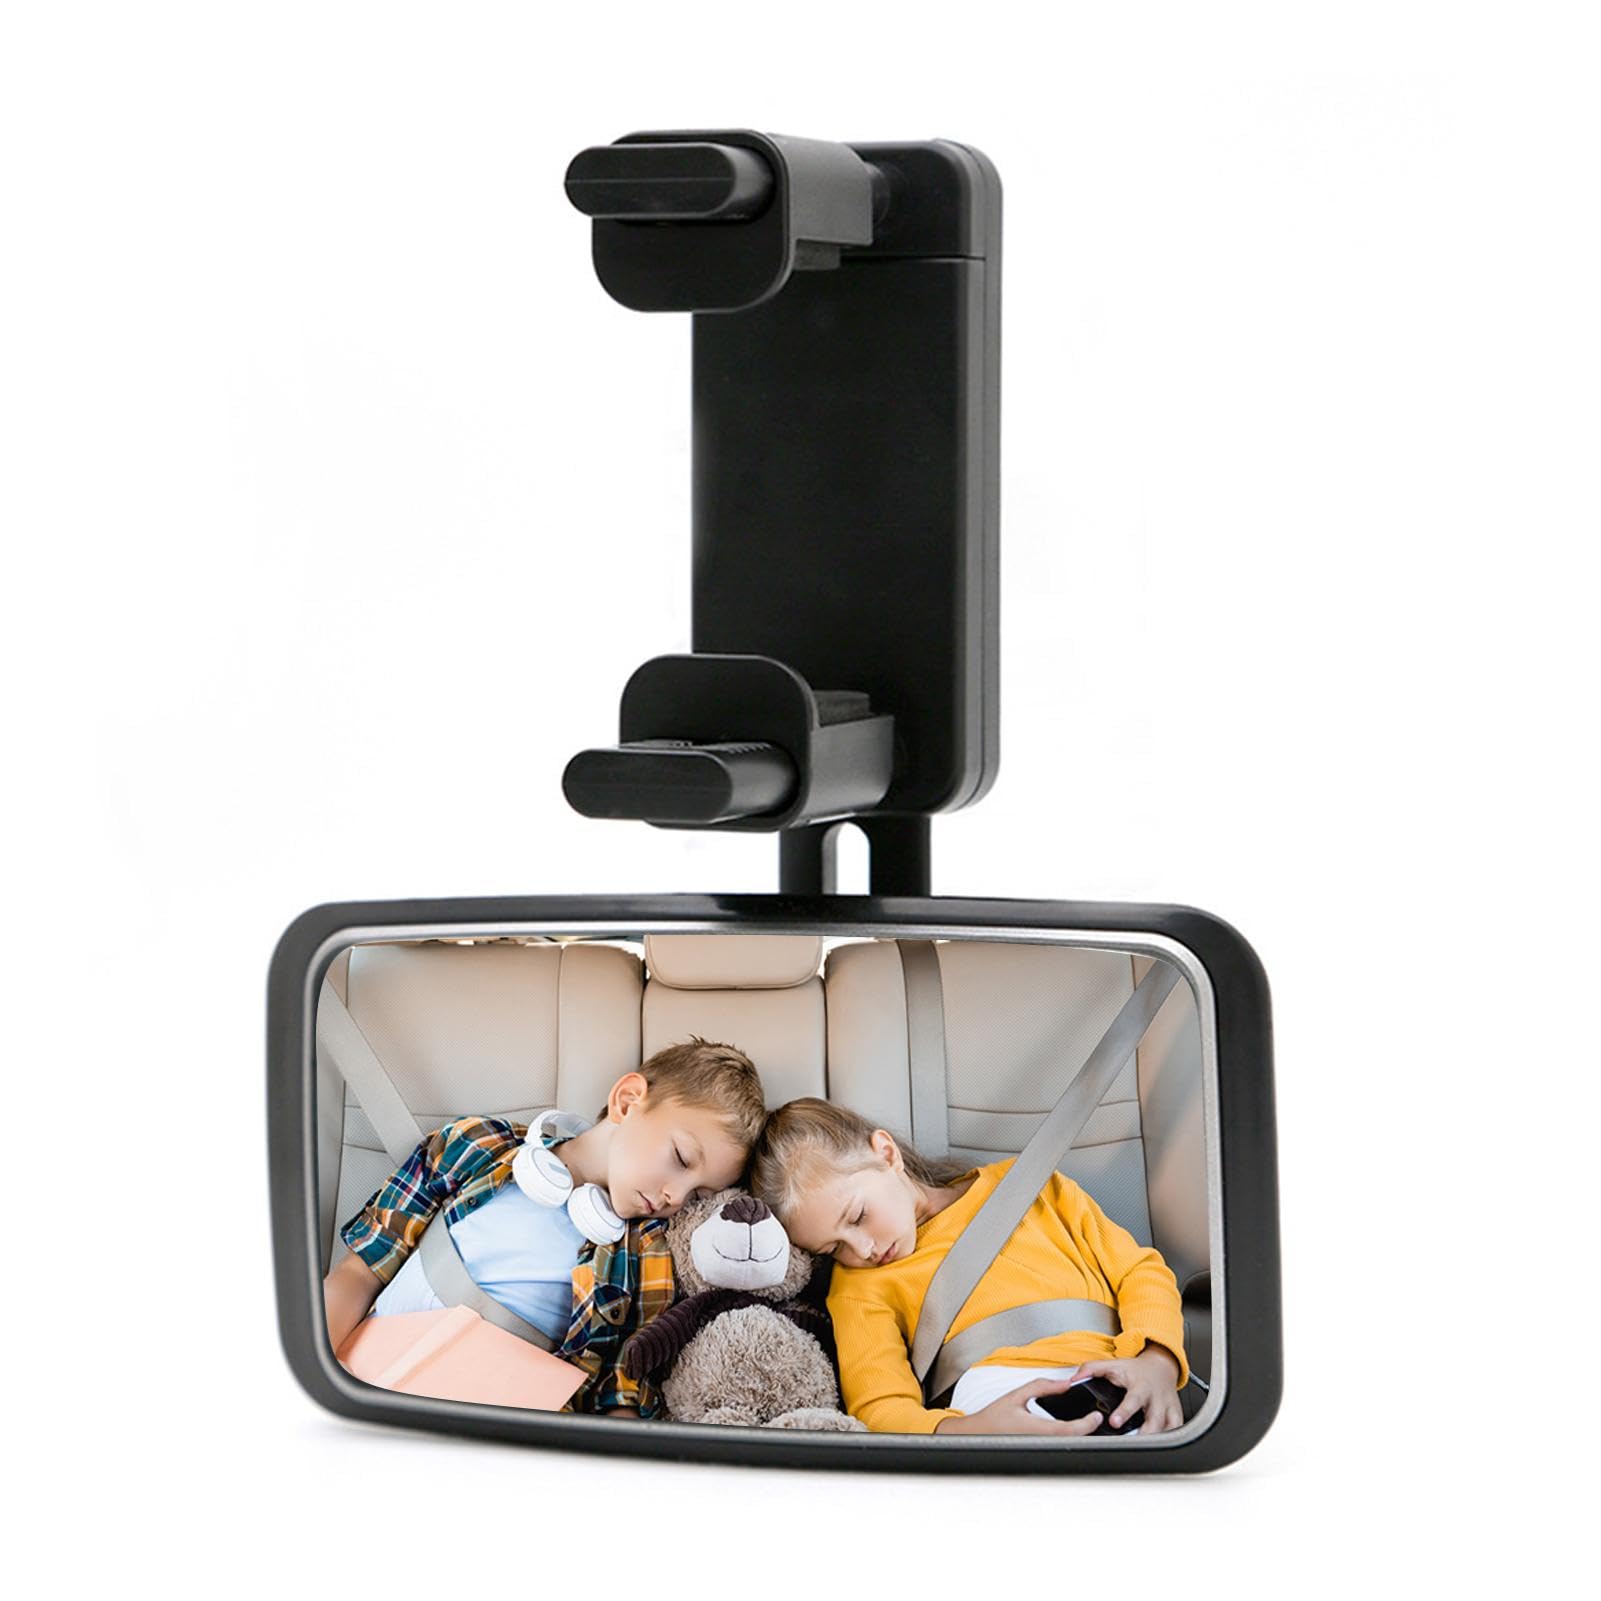 Kinder-Autospiegel, 360-Grad-Autositz-Optik, Baby-Autospiegel, bruchsichere Auto-Babyspiegel, verstellbare Rückansicht, einfach zu bedienen, einfach zu installieren, geeignet für Autos von Filvczt